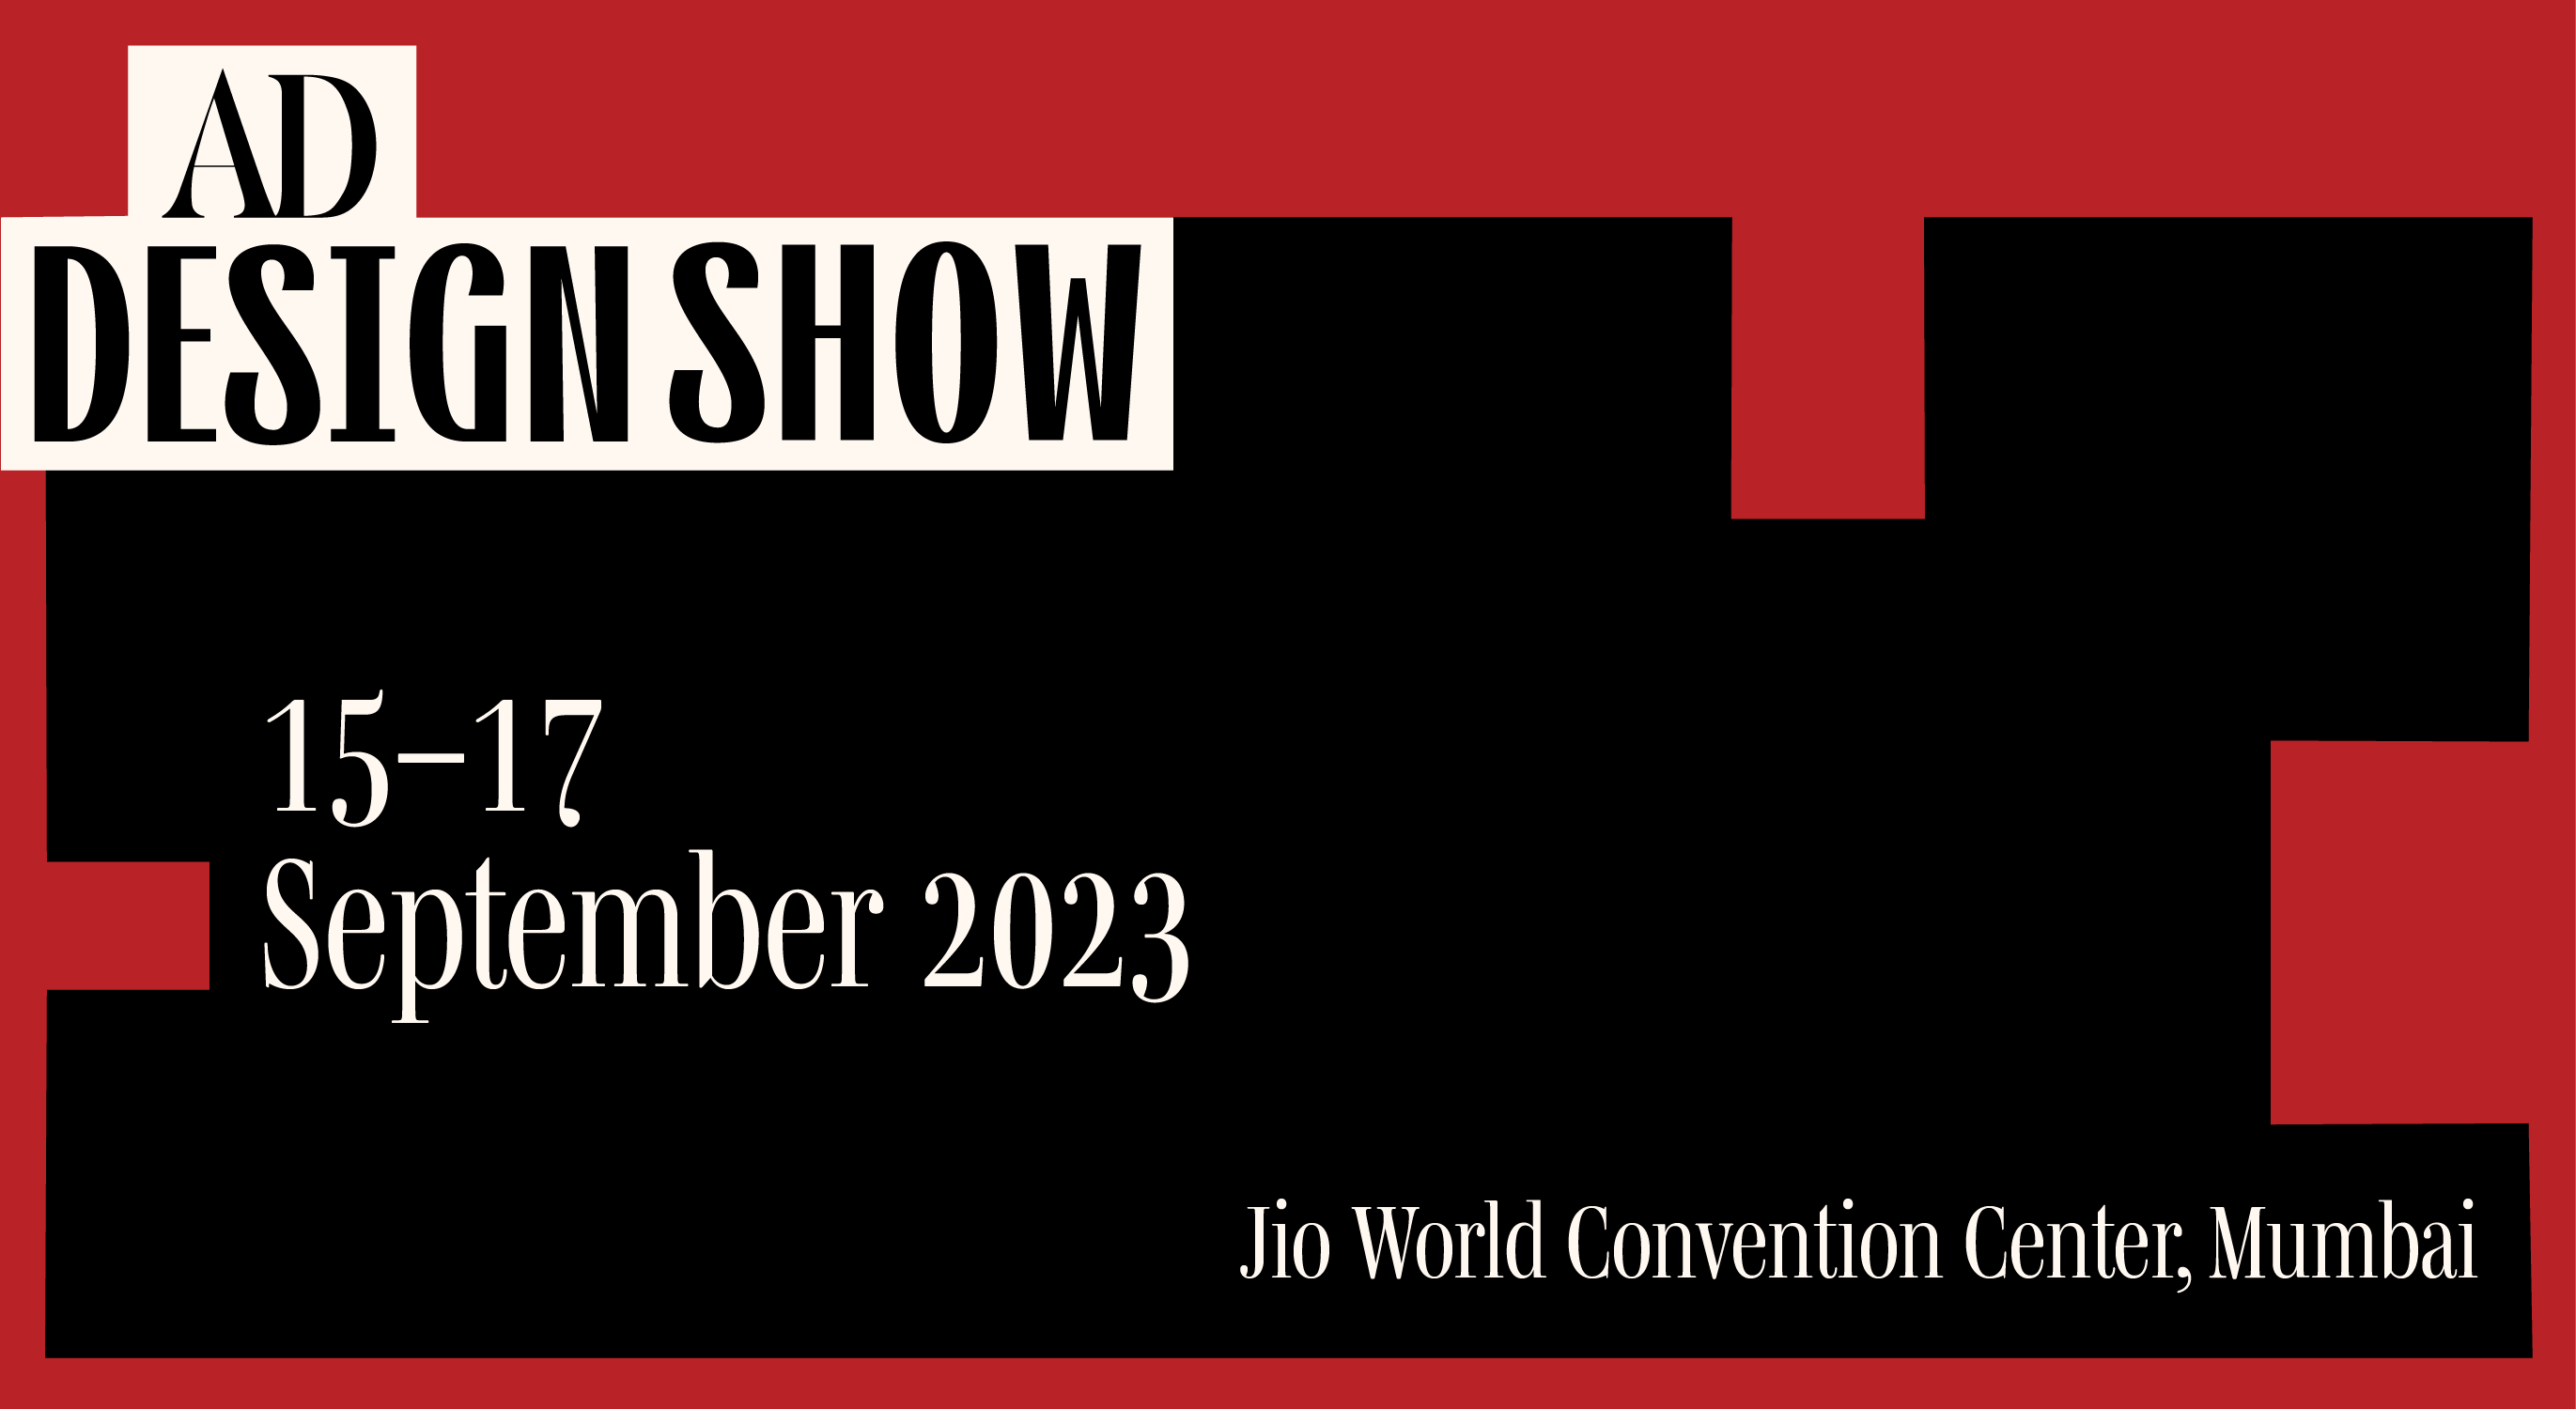 AD Design Show 2023